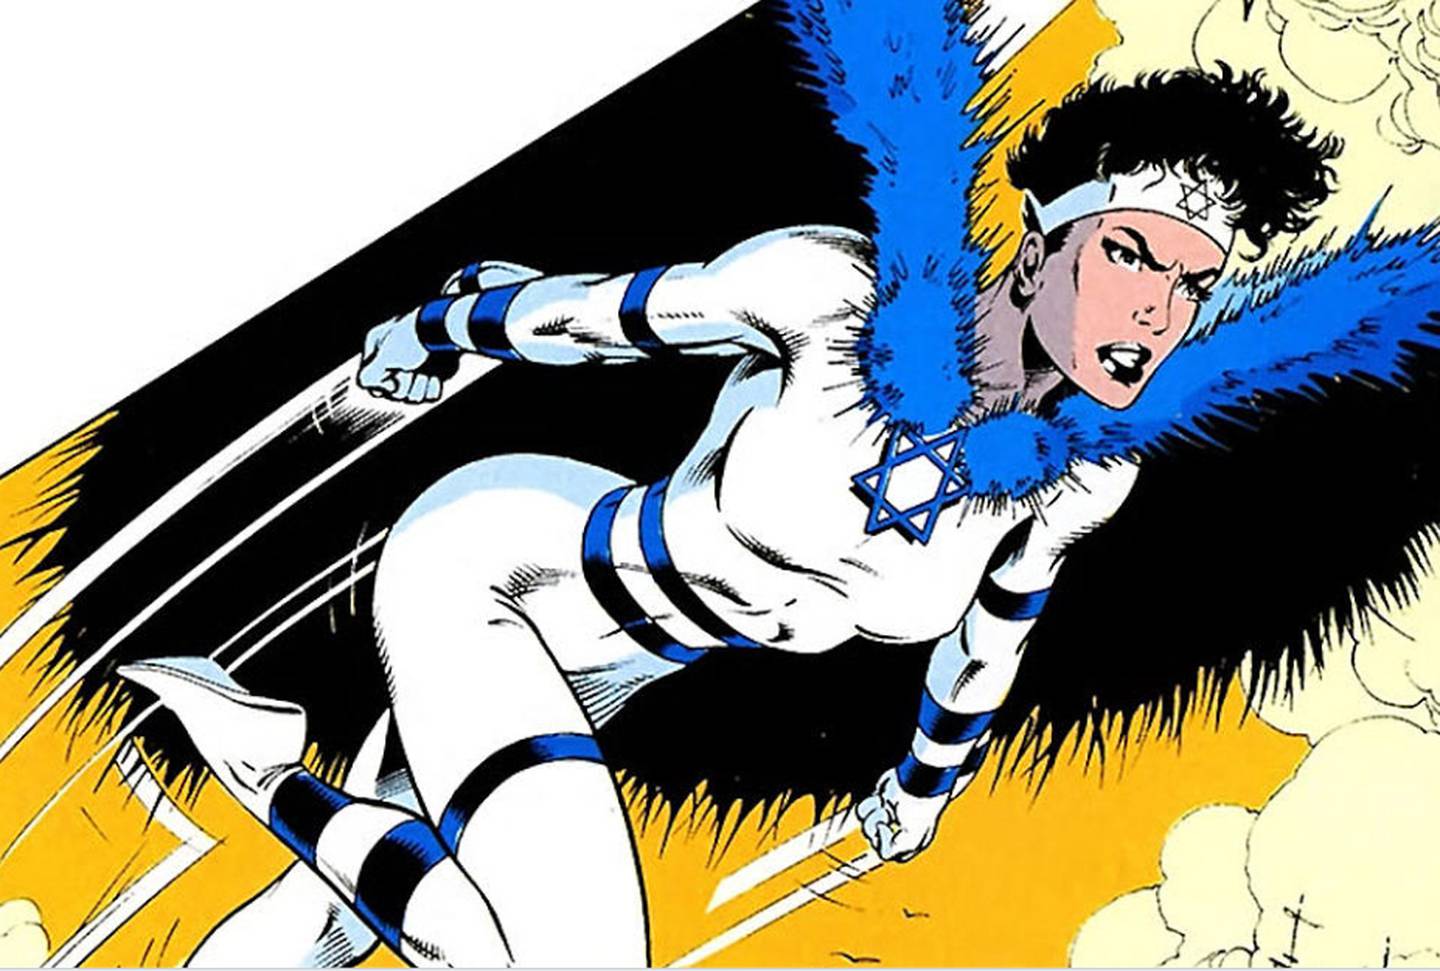 La heroína Sabra, que apareció en los cómics hace 40 años, lleva la estrella de David en su uniforme. Foto: Marvel